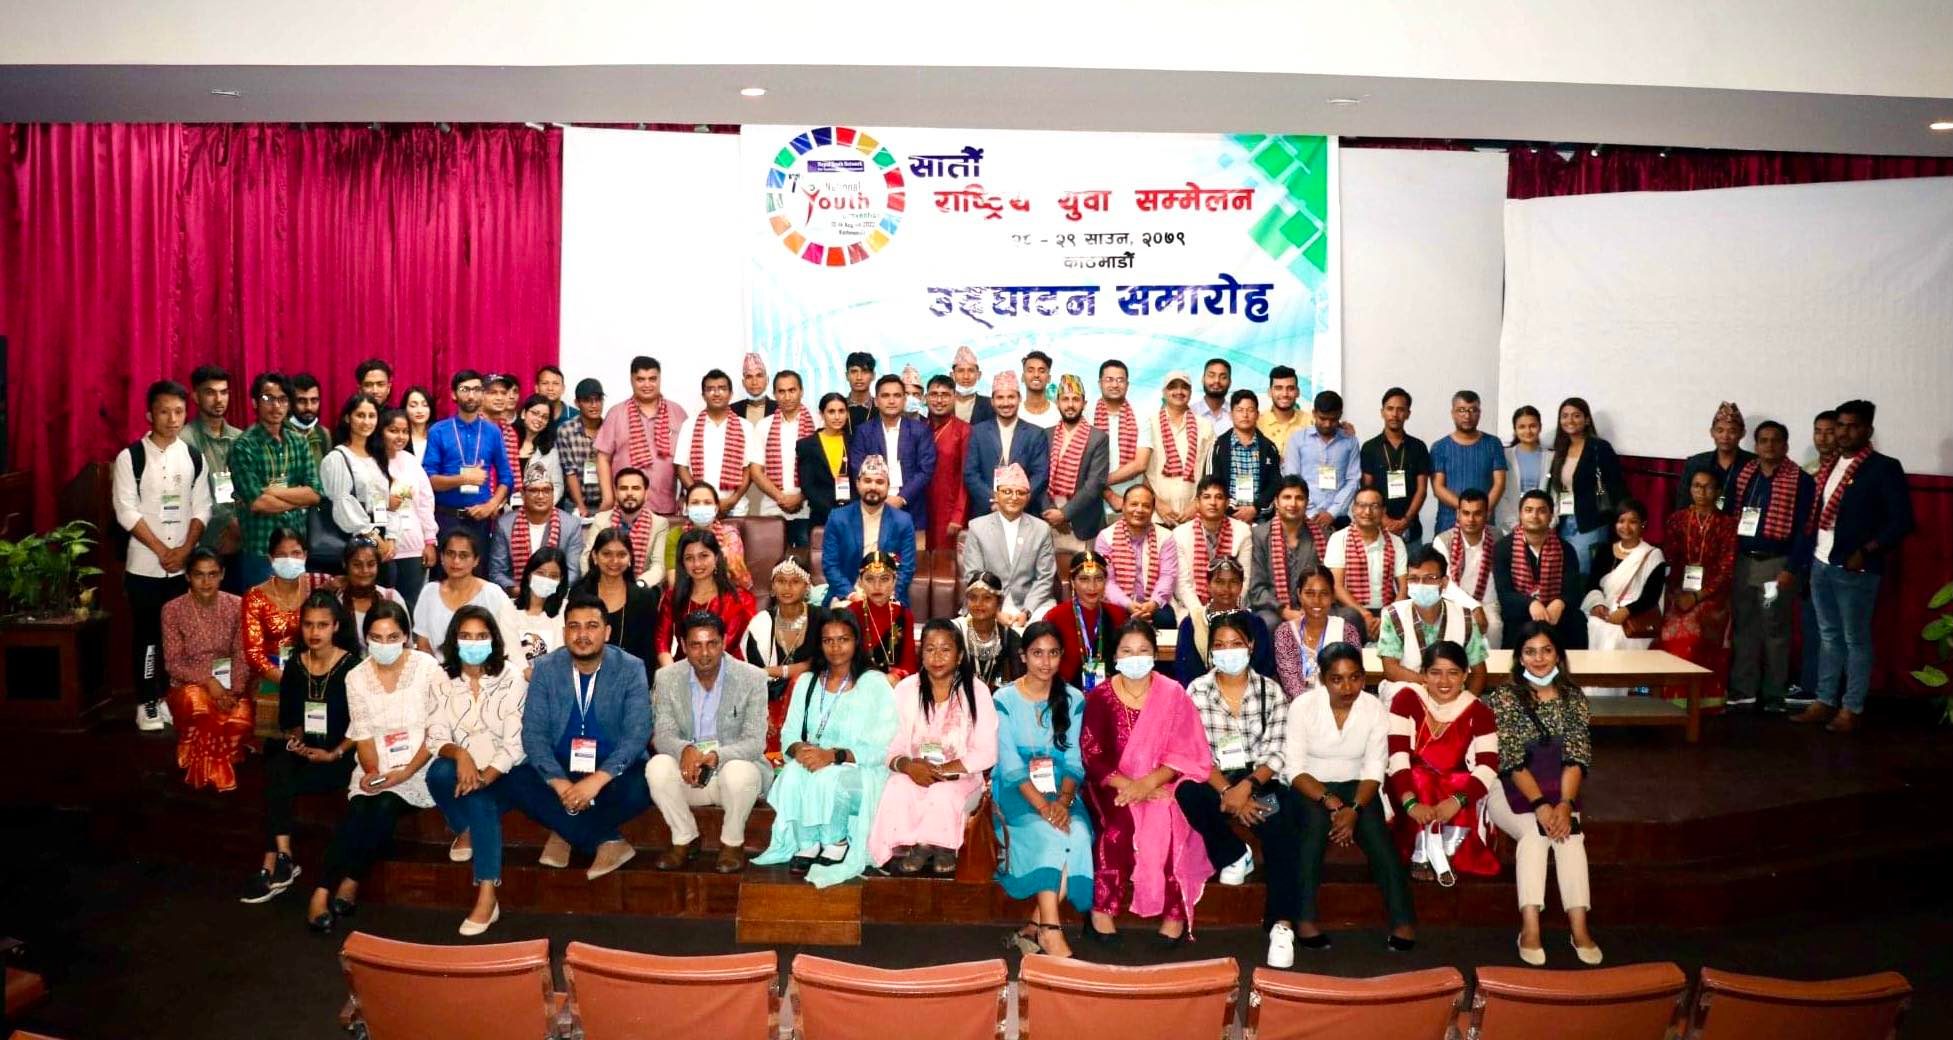 नौँ बुँदे काठमाडौं घोषणापत्र जारी गर्दै सातौं राष्ट्रिय युवा सम्मेलन सम्पन्न